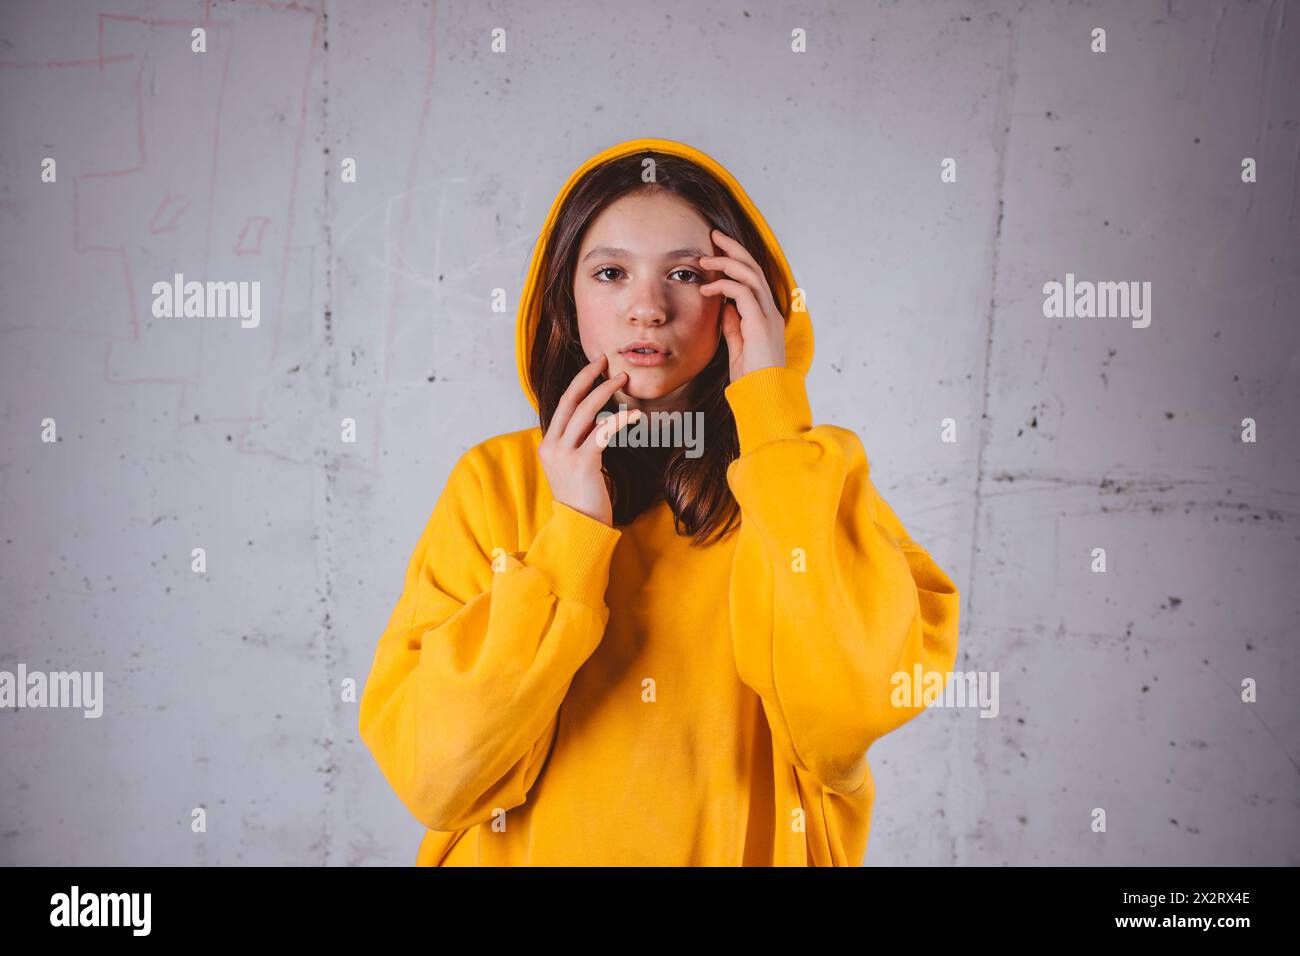 Mädchen in gelbem Kapuzenpulli posiert vor grauem Hintergrund Stockfoto